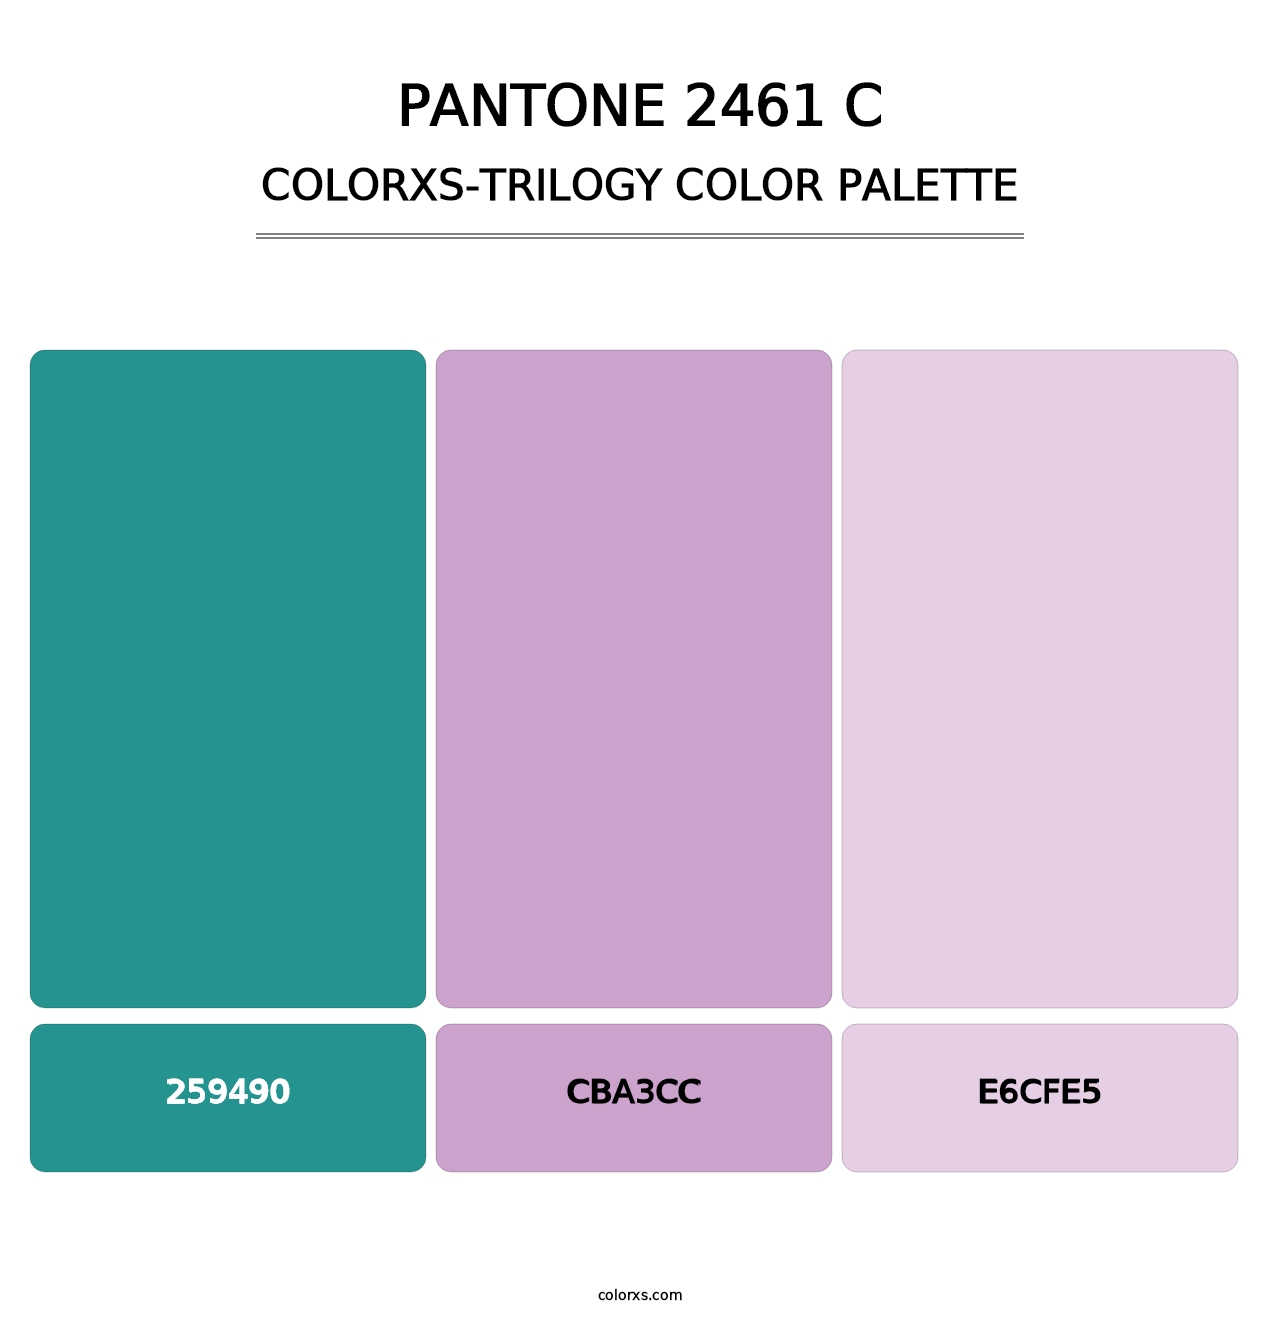 PANTONE 2461 C - Colorxs Trilogy Palette